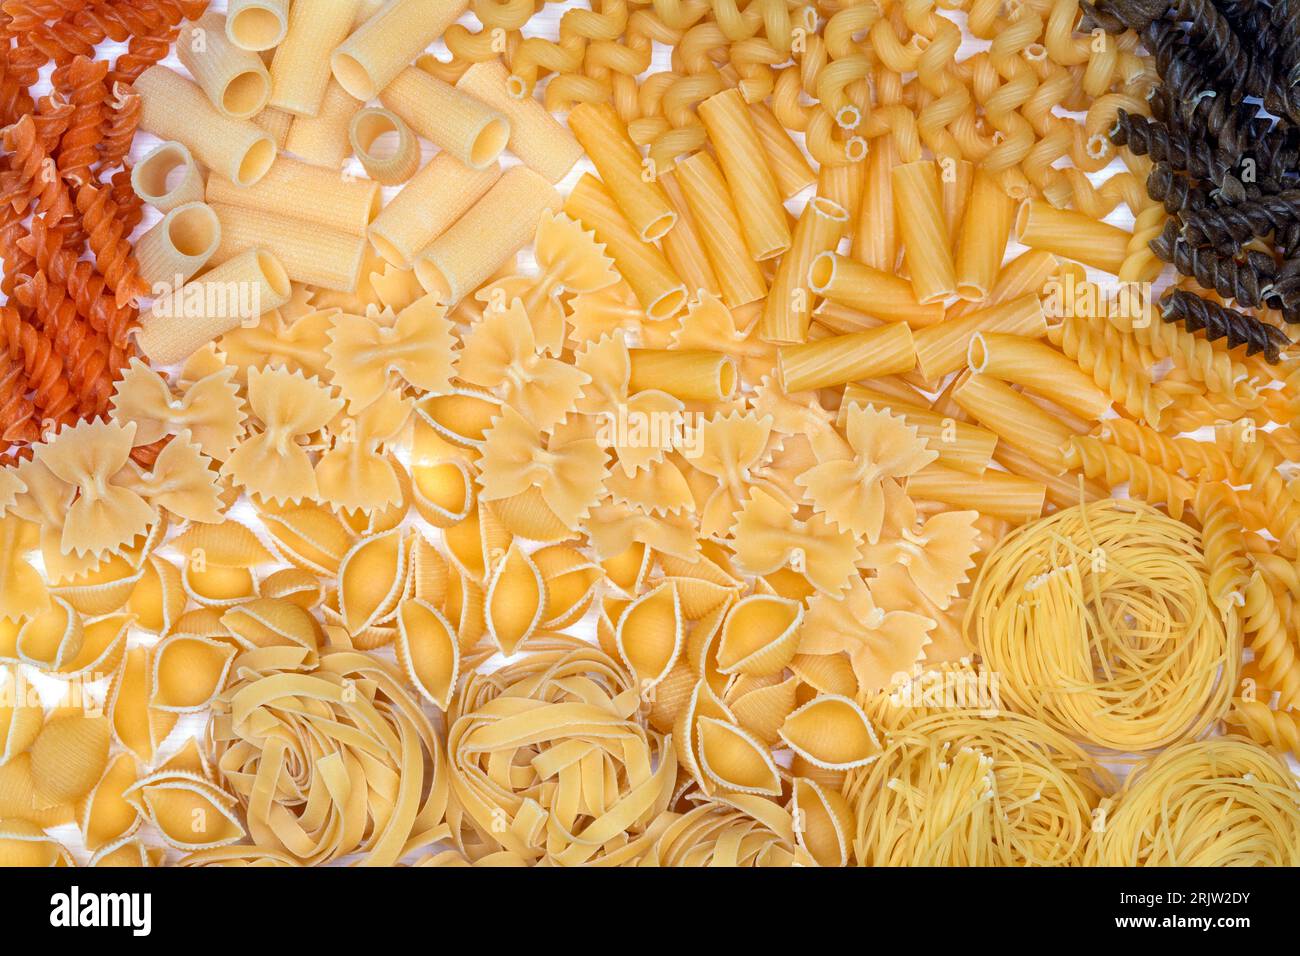 Types of Pasta - Rigatoni, Spirali, Farfalle, Tagliatelle, Tricolore Fusilli and Vermicelli. Stock Photo